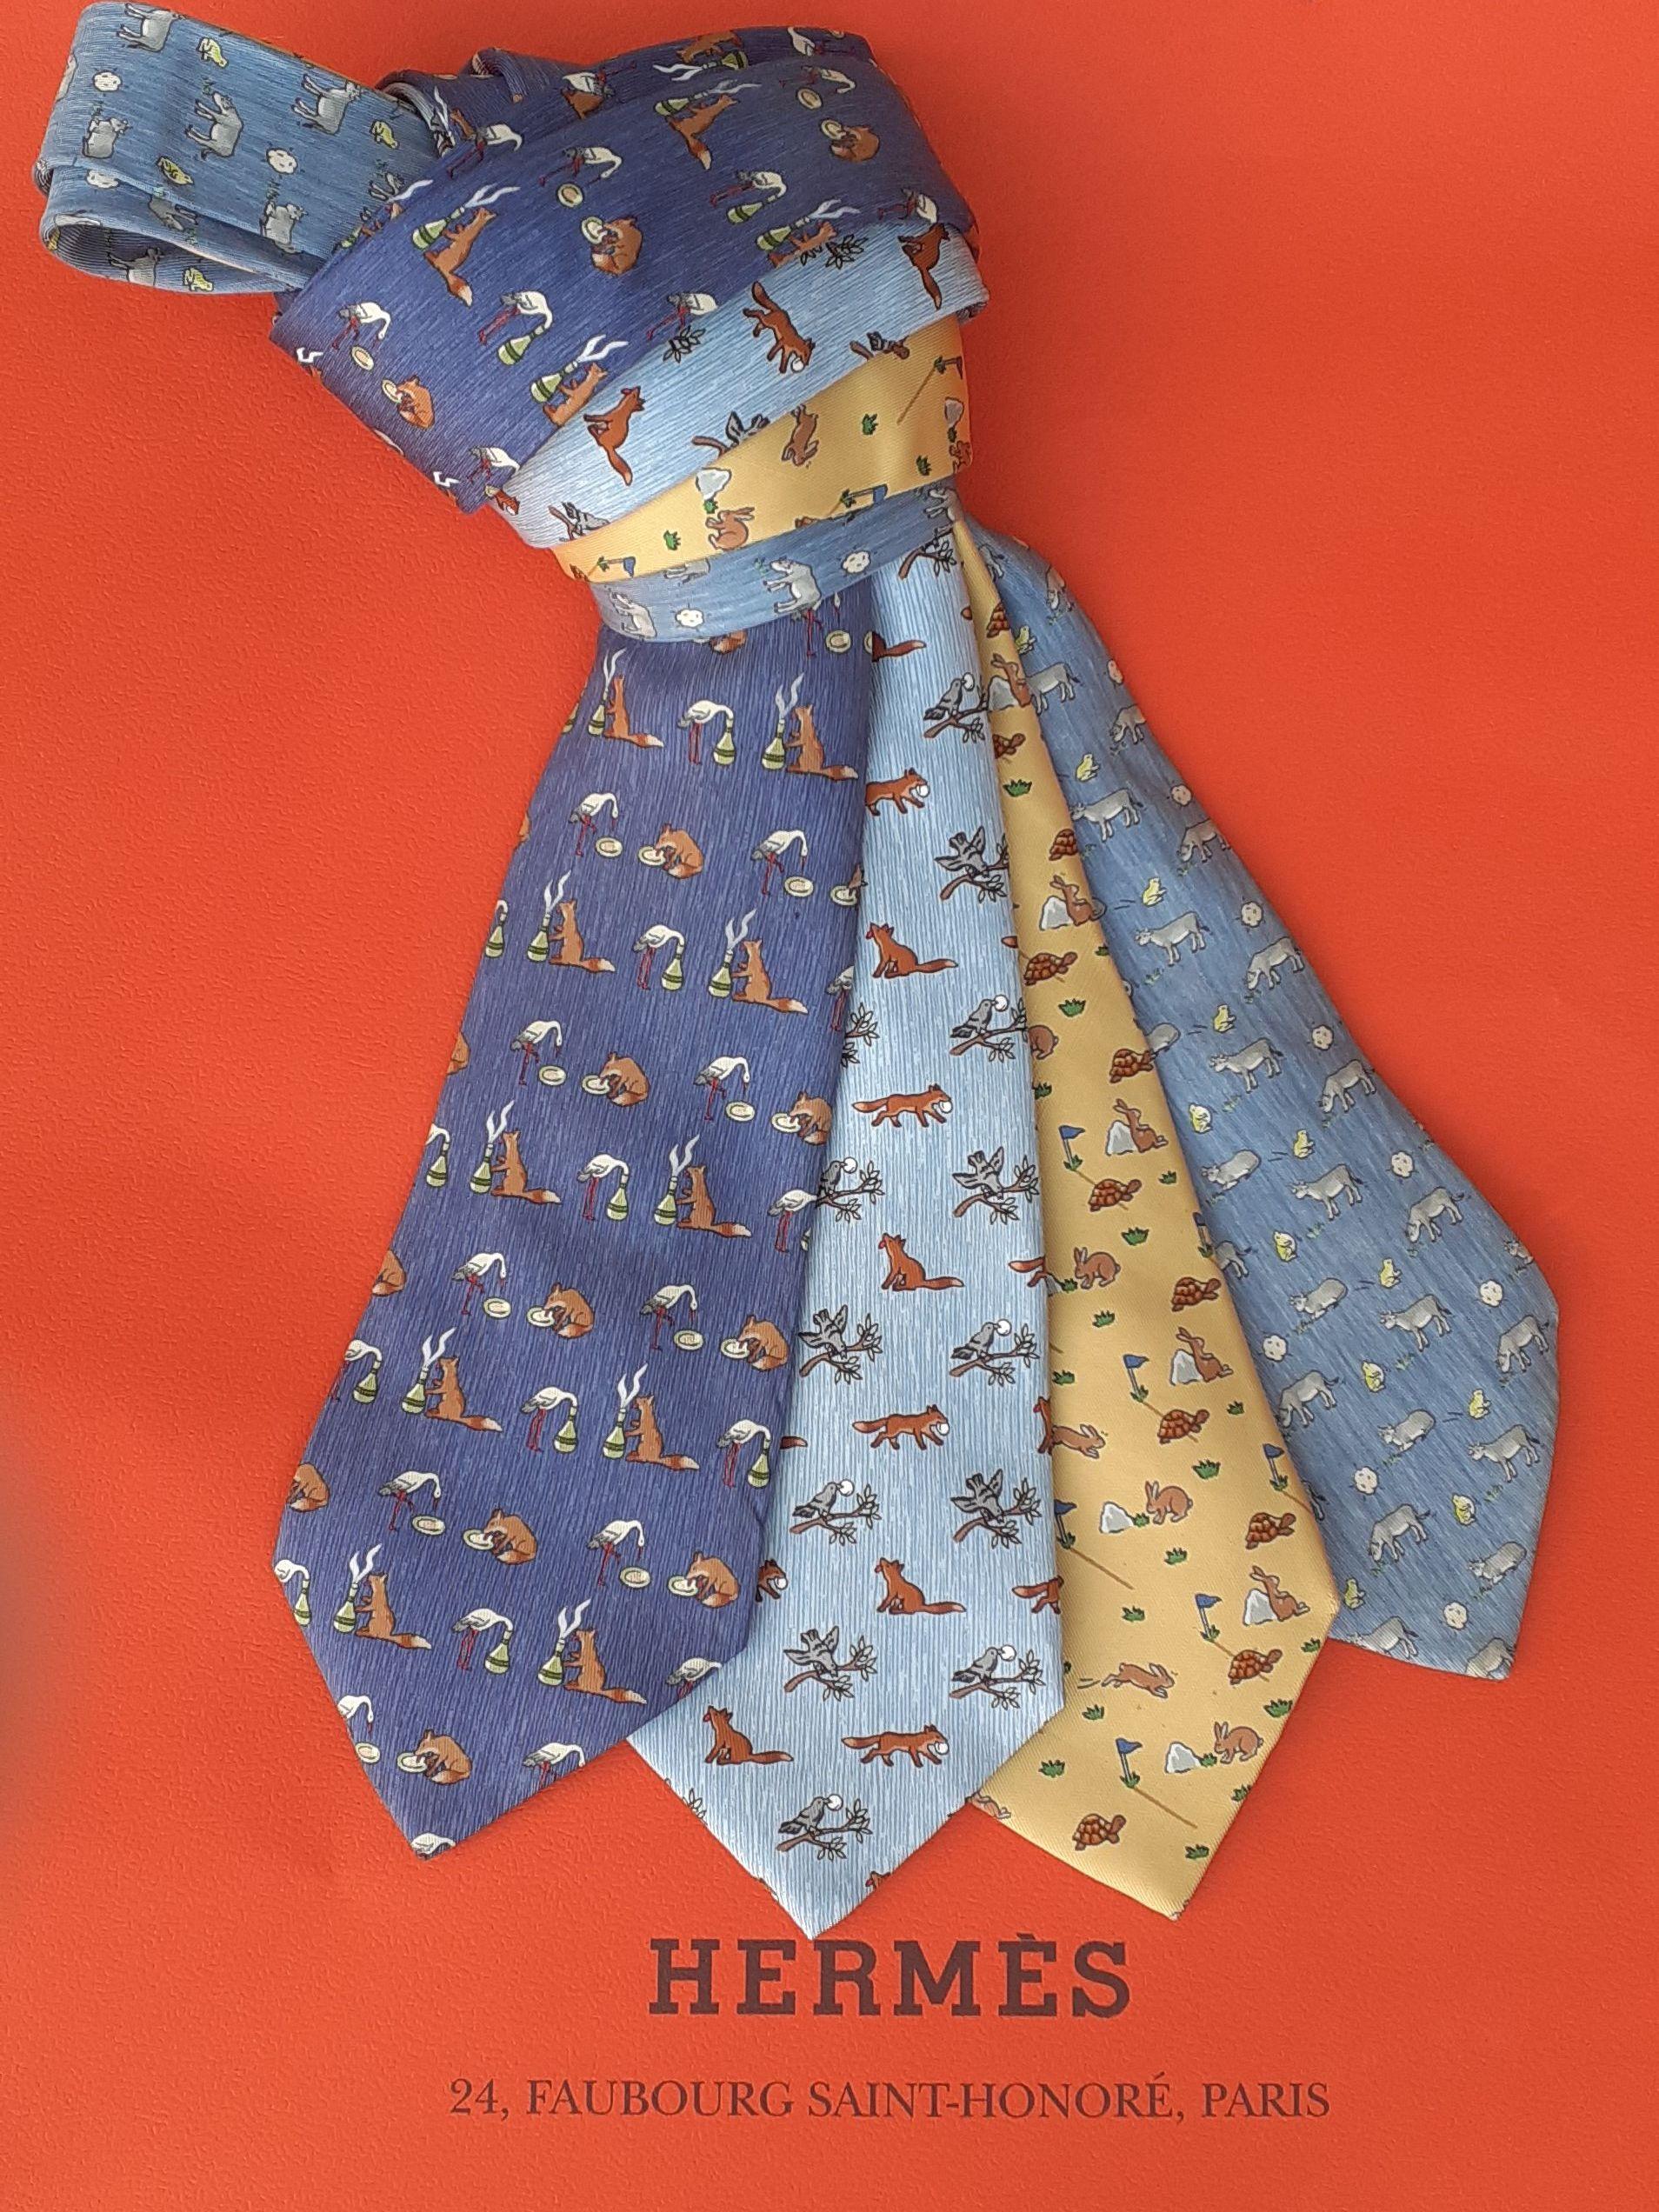 Rare ensemble de 4 cravates Hermès authentiques

Impressions : Les Fables de La Fontaine

De gauche à droite :

1. Le Renard et la Cigogne en bleu foncé, marron, blanc, vert. 100% soie. Doublé de soie bleu foncé unie. Avec étiquette d'entretien. 155